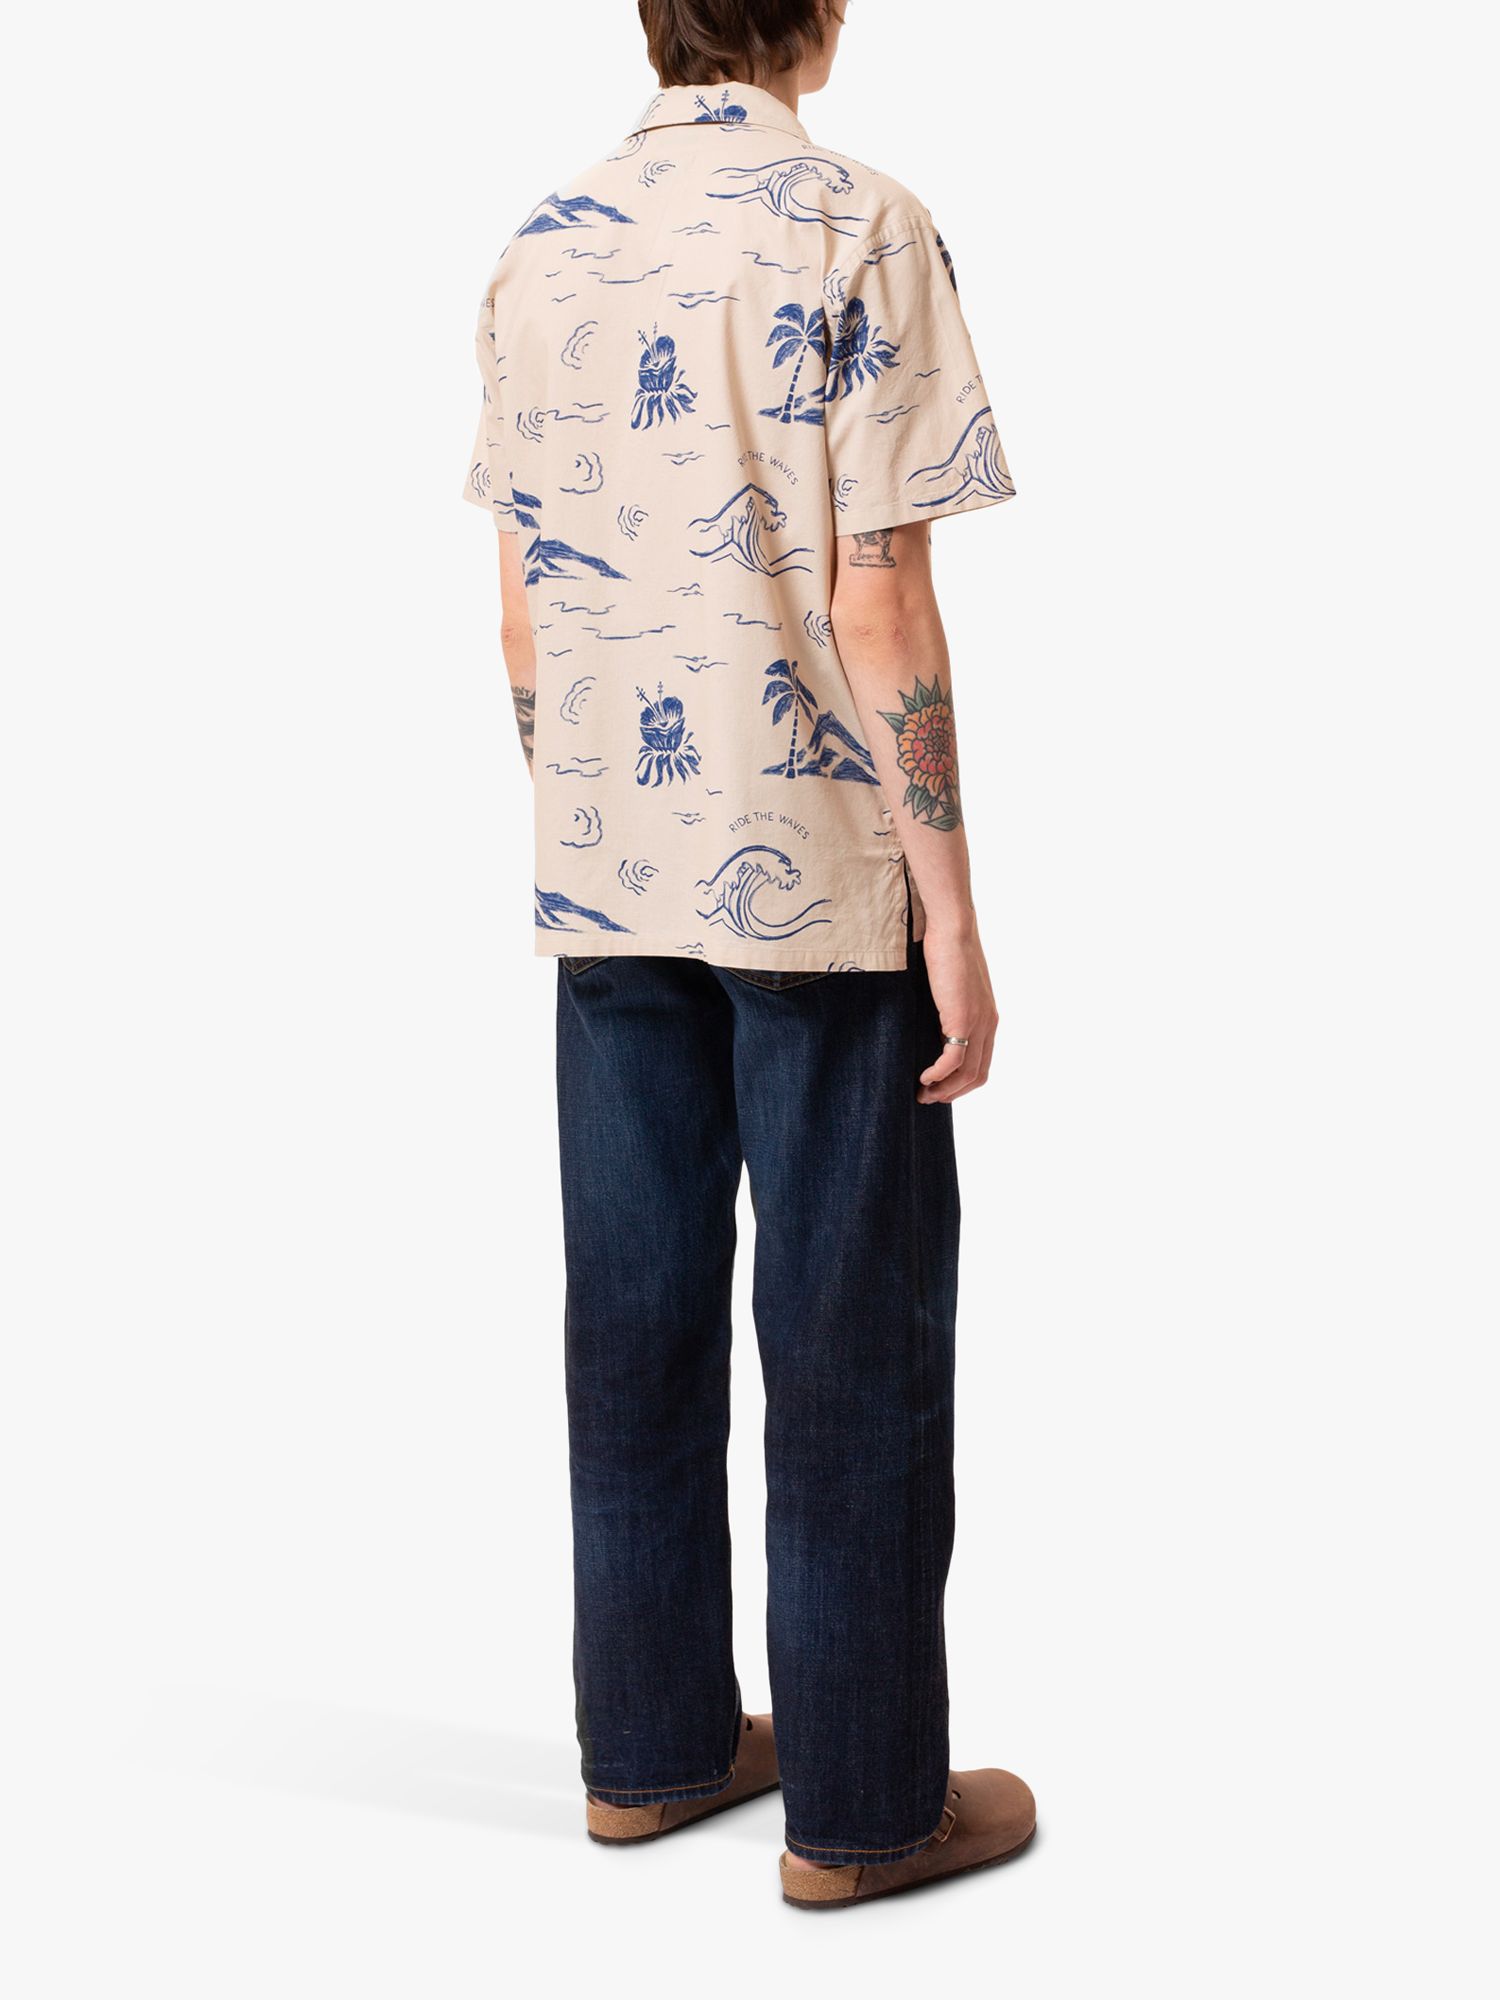 Nudie Jeans Arvid Waves Short Sleeve Shirt, Ecru/Multi, L